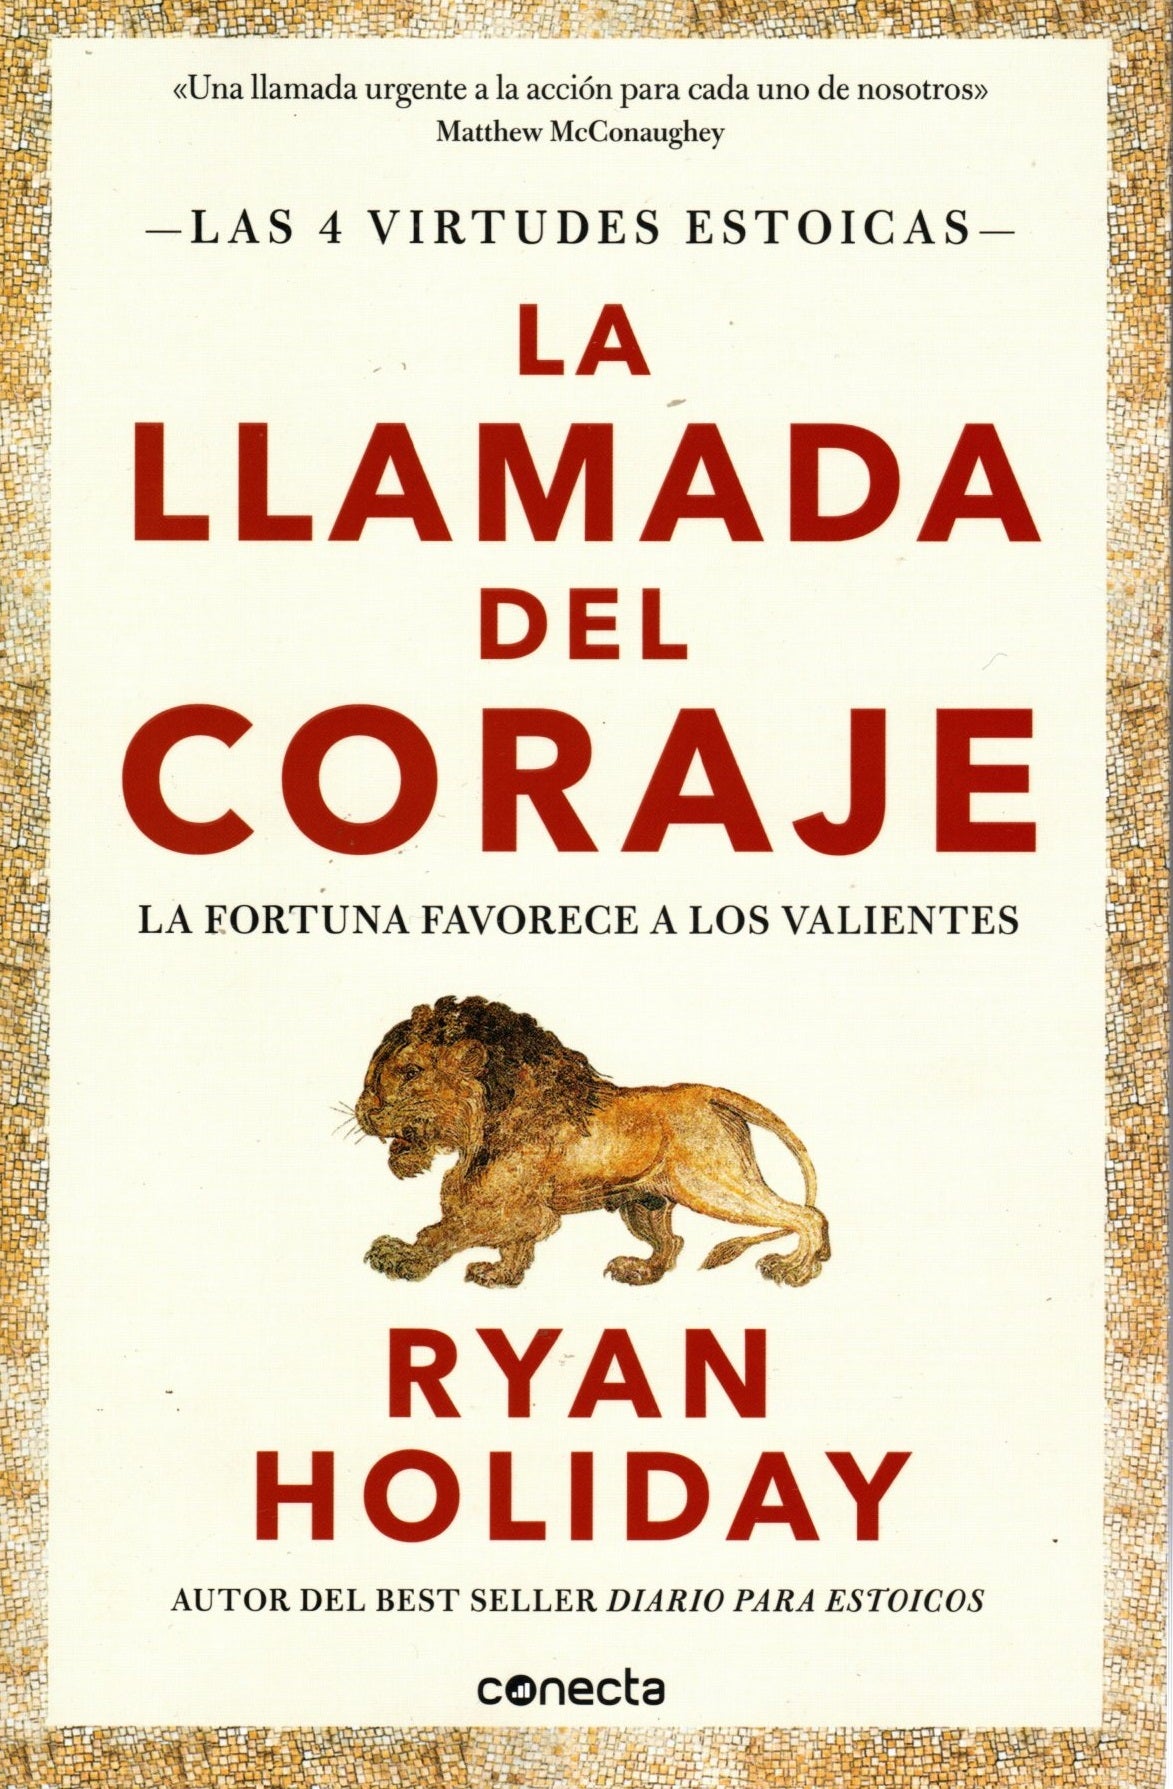 Libro Ryan Holiday - La Llamada Del Coraje